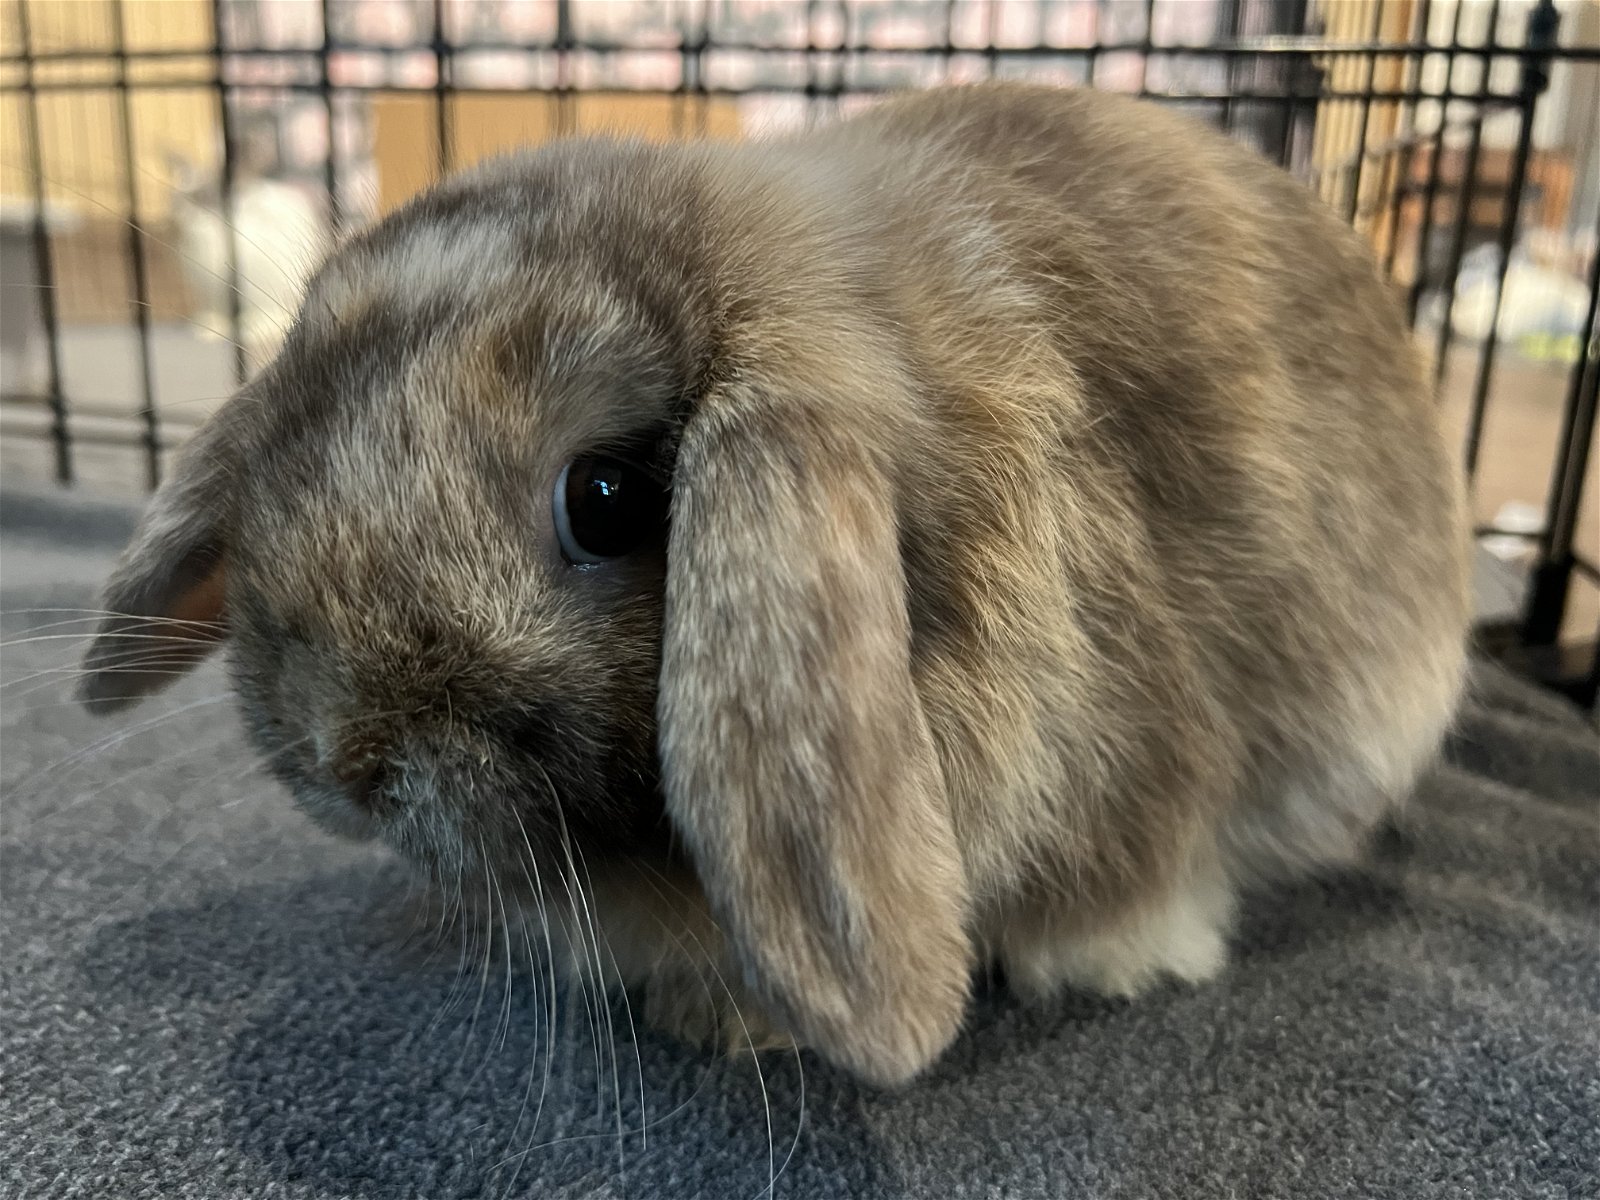 adoptable Rabbit in McMillan, WI named Benji